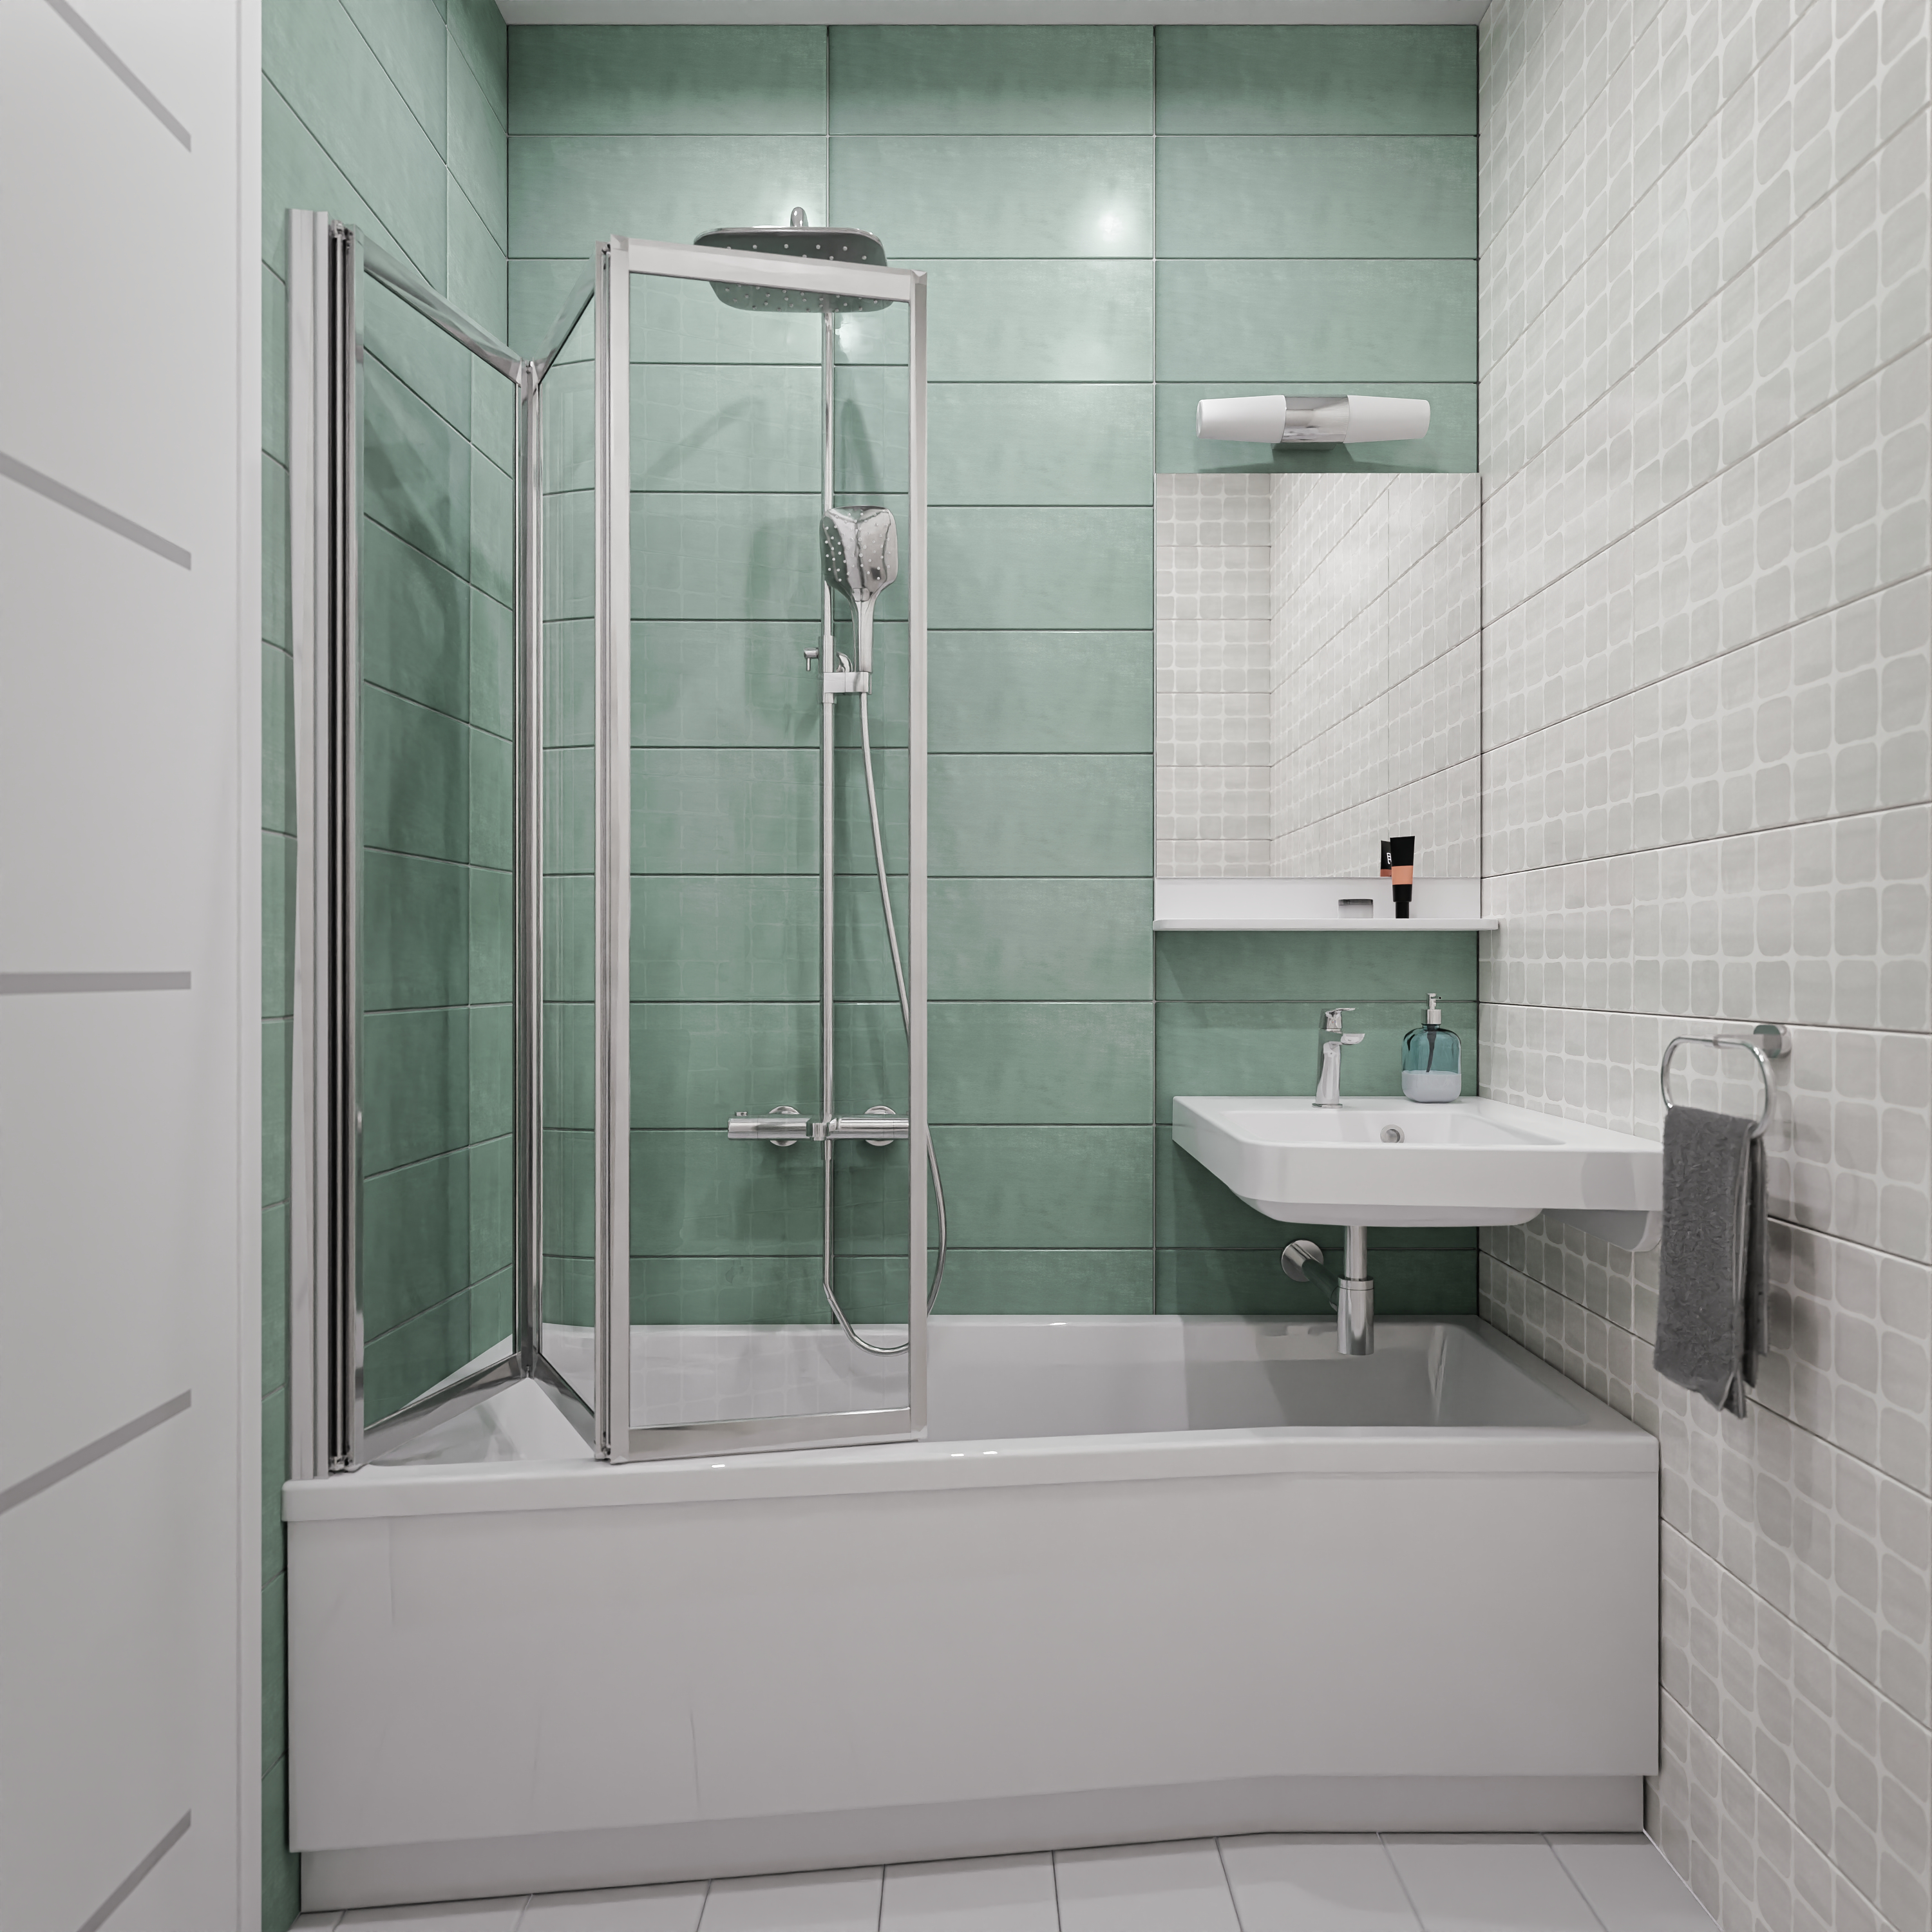 A legkisebb fürdőszobákba nyújt megoldást a BeHappy termékei. 